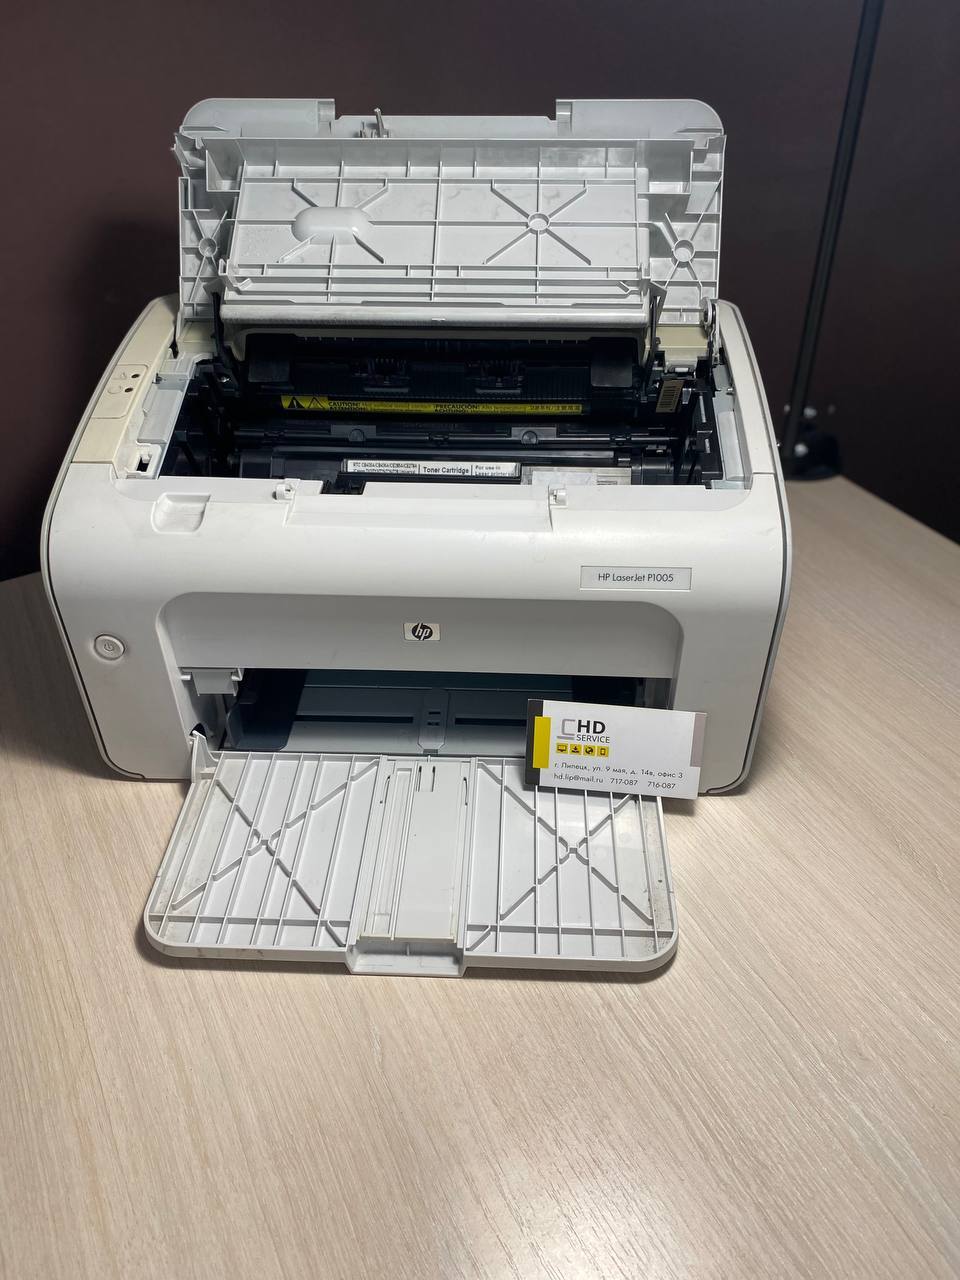 Купить принтер HP 1005 в Липецке